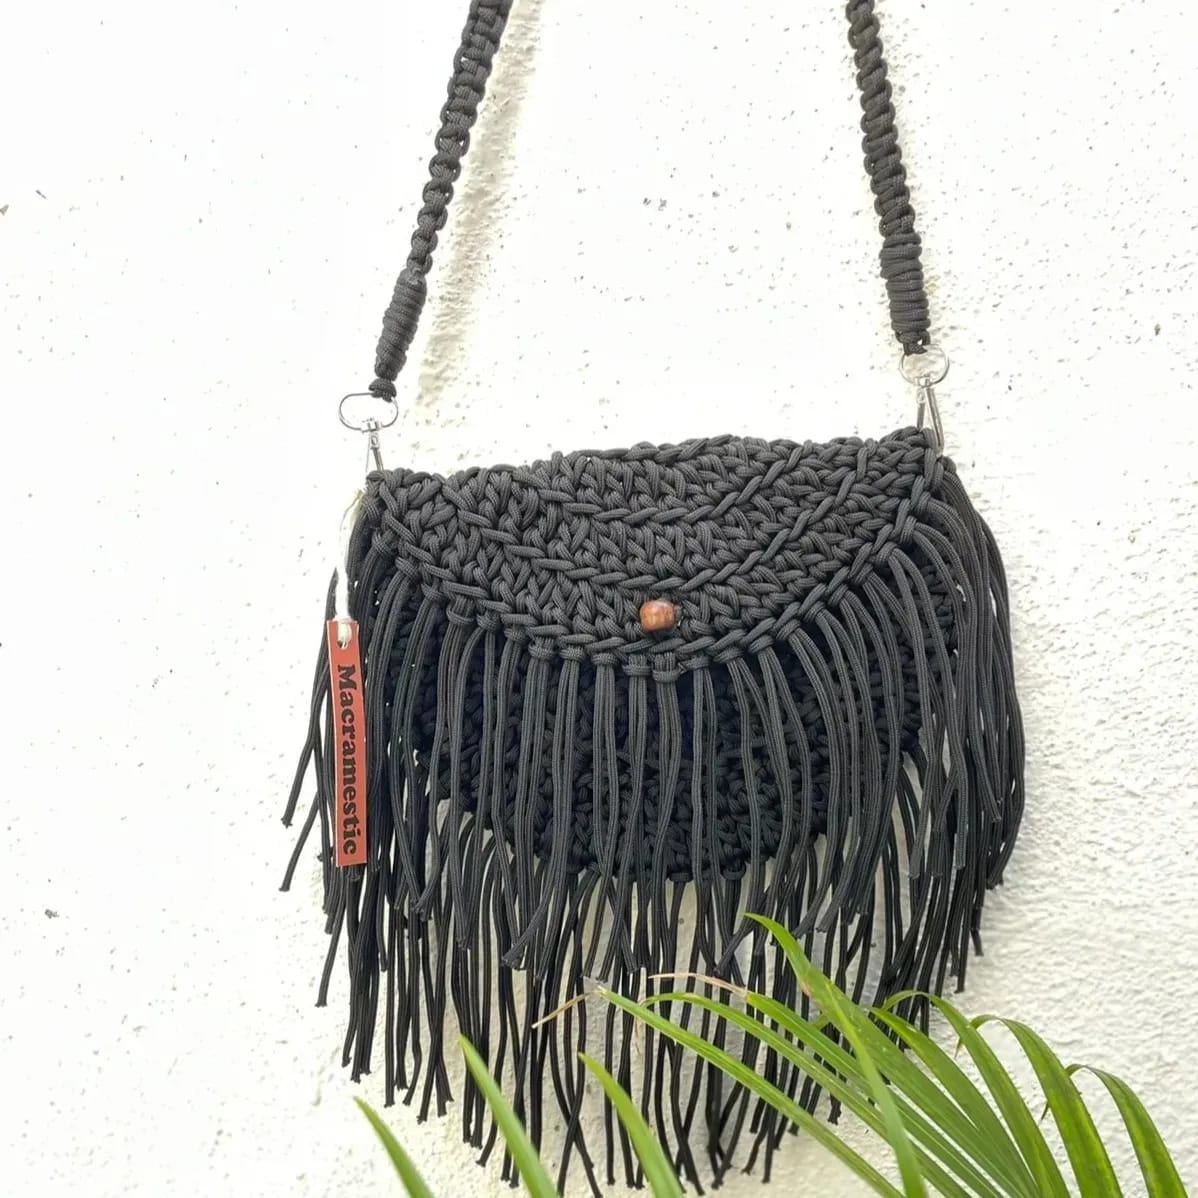 Crochet sling bag handmade